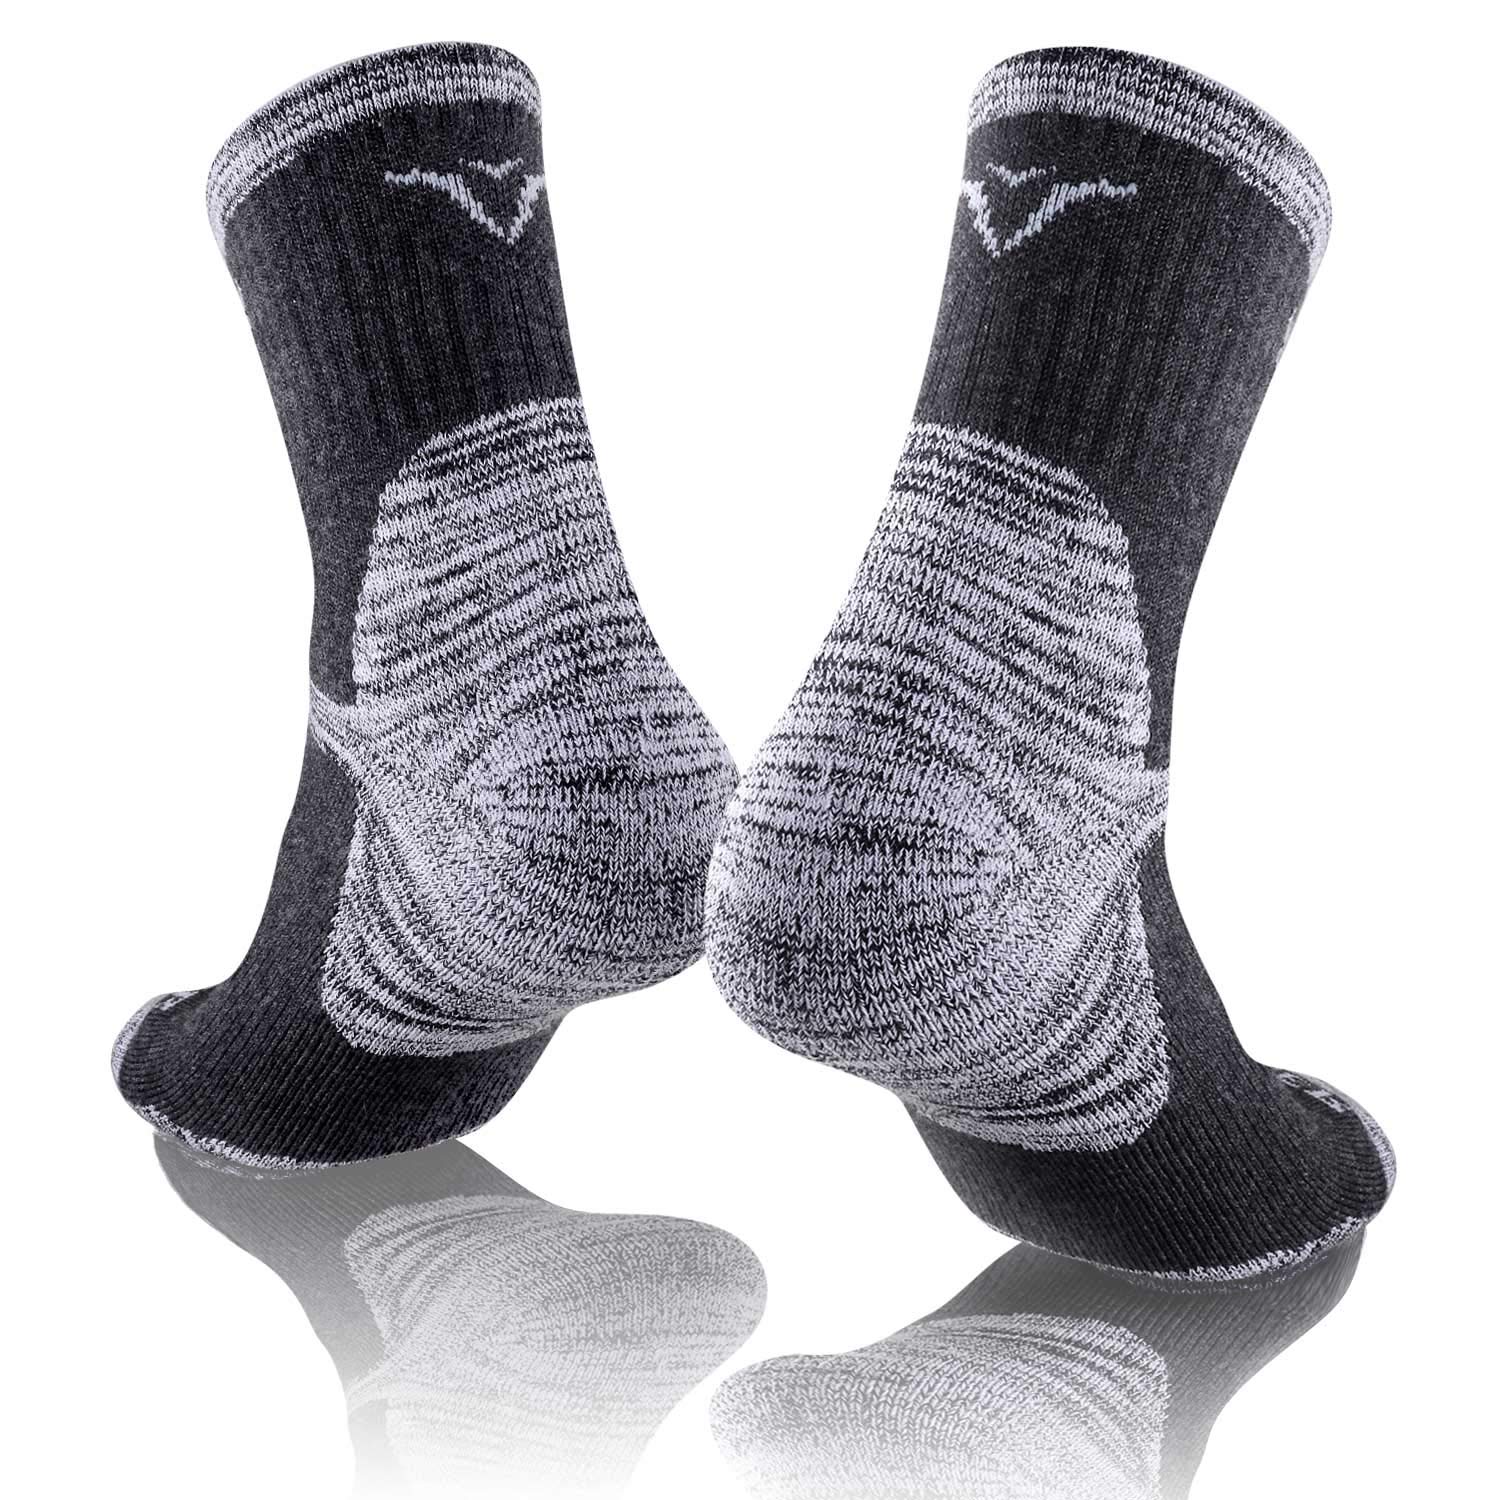 FEIDEER Men's Hiking Walking Socks, Multi-pack Wicking Cushioned Outdoor Recreation Crew Socks